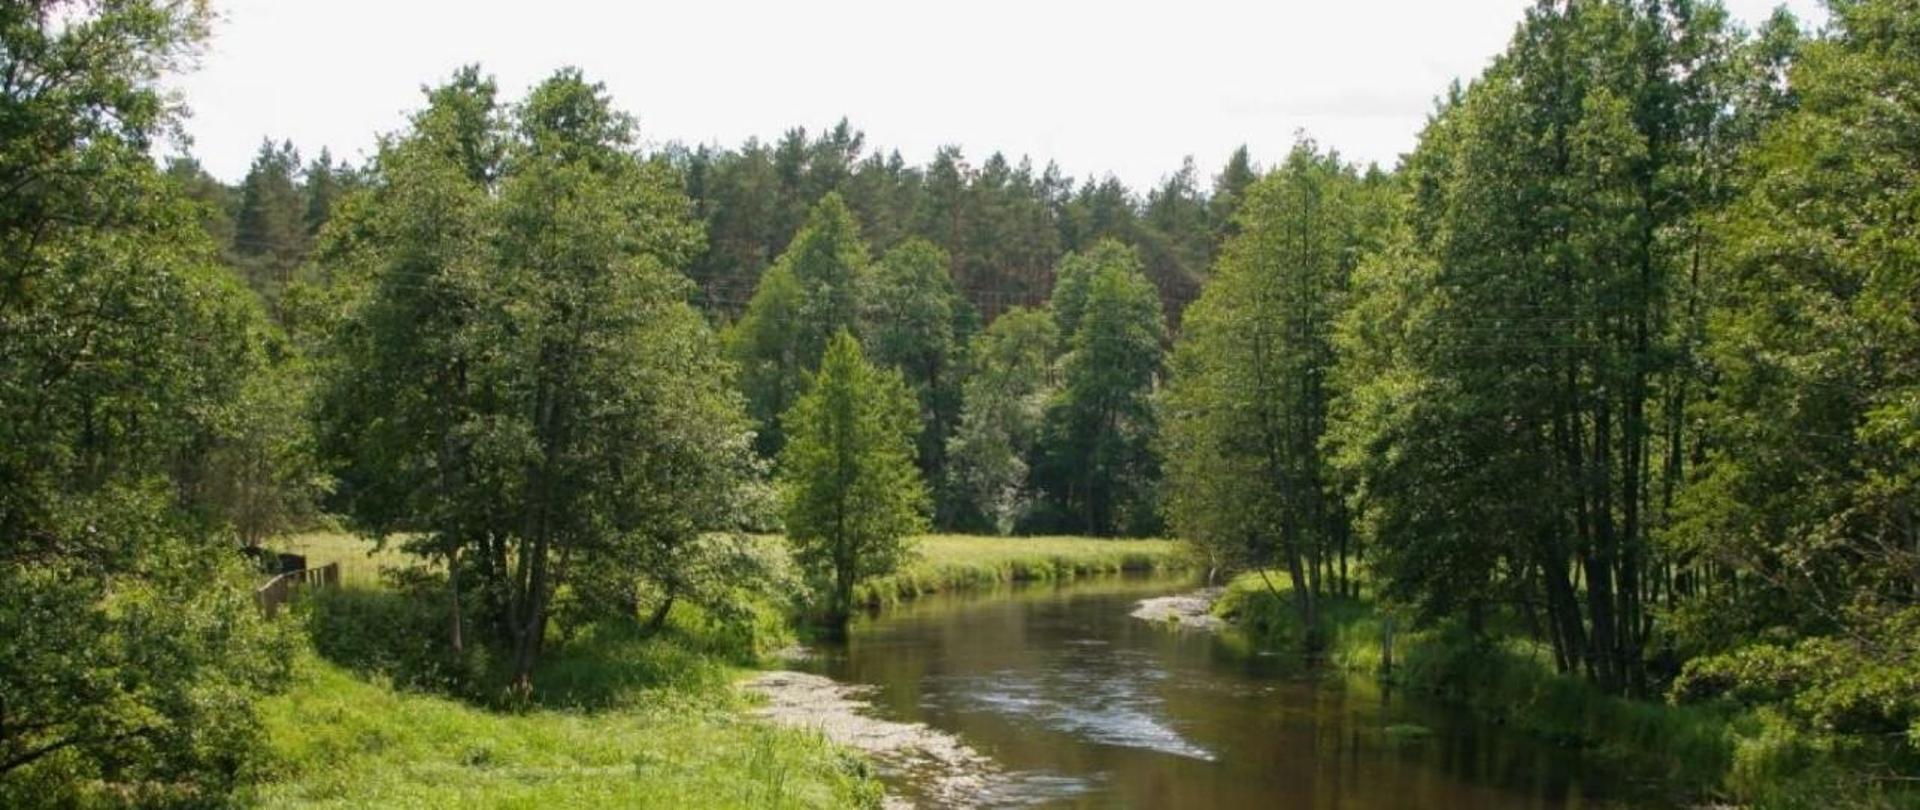 Zdjęcie przedstawiające rzekę w lesie